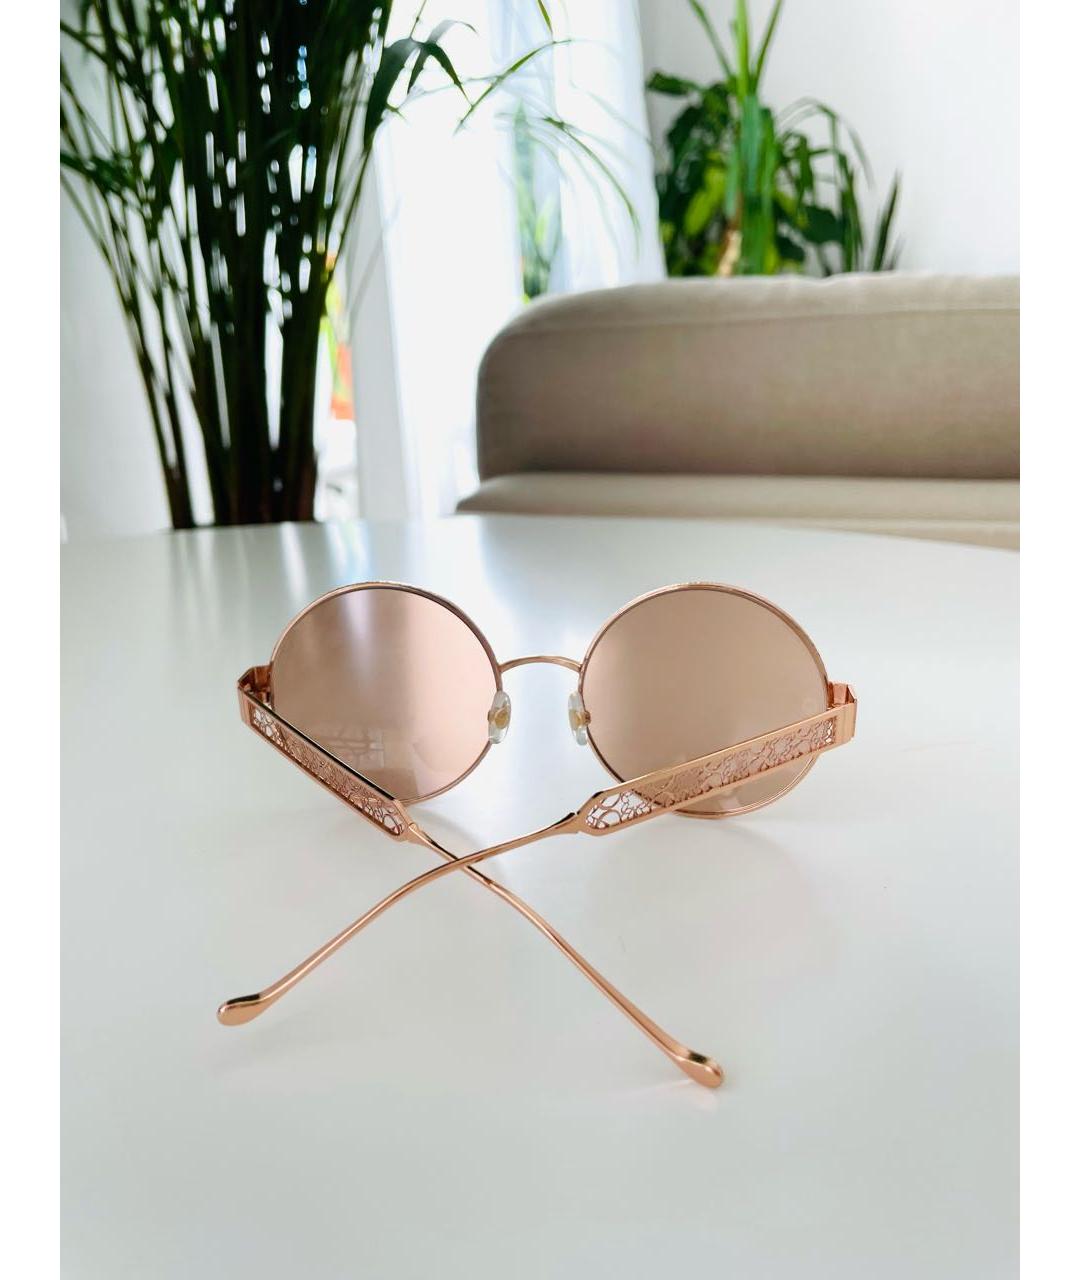 ELIE SAAB Золотые металлические солнцезащитные очки, фото 6